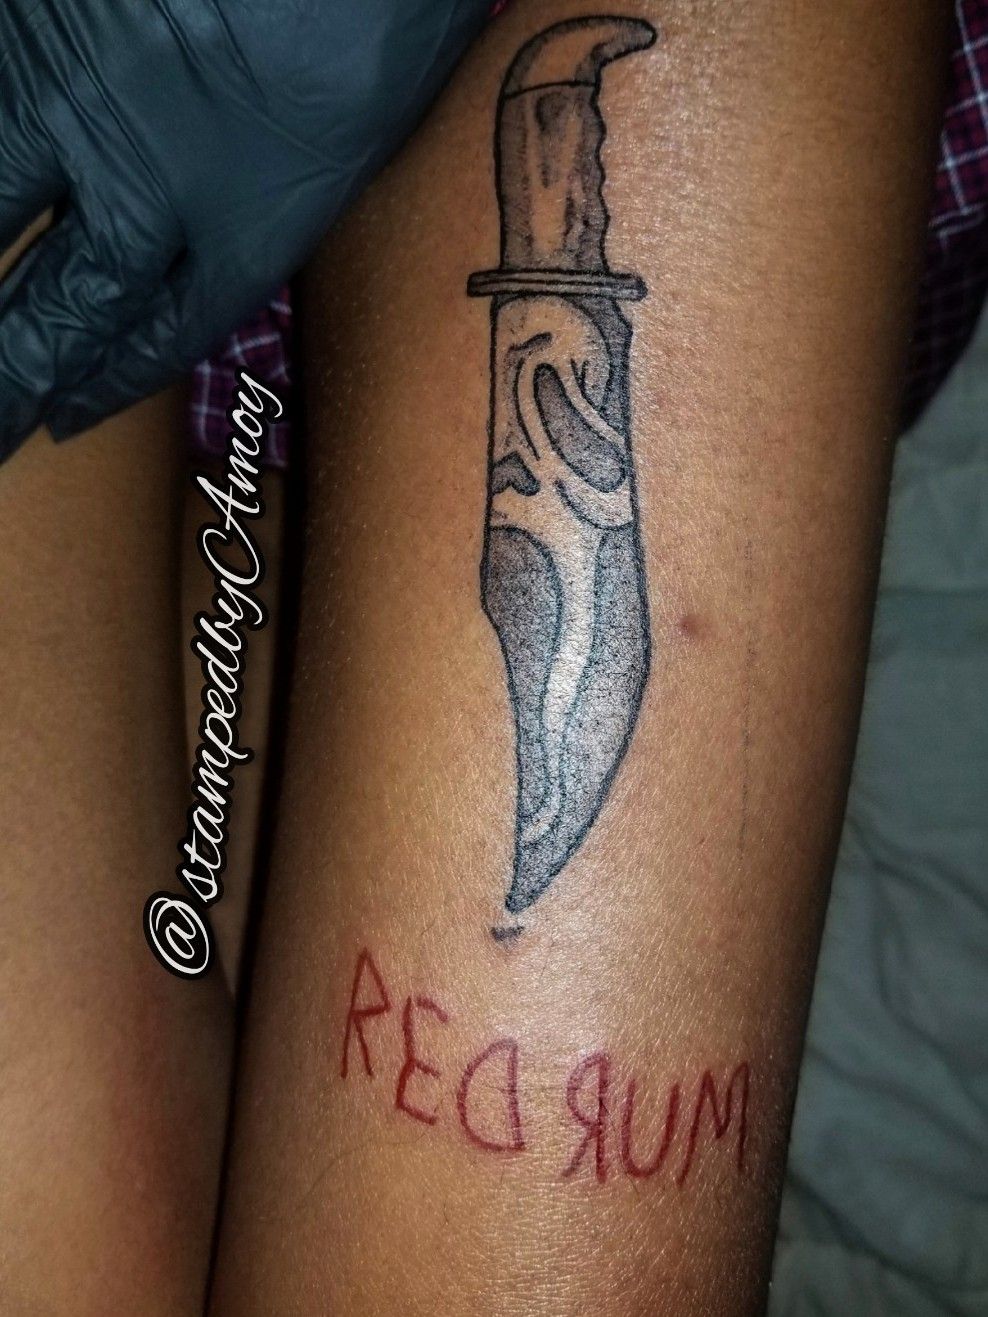 redrum tattoo on legTikTok Search